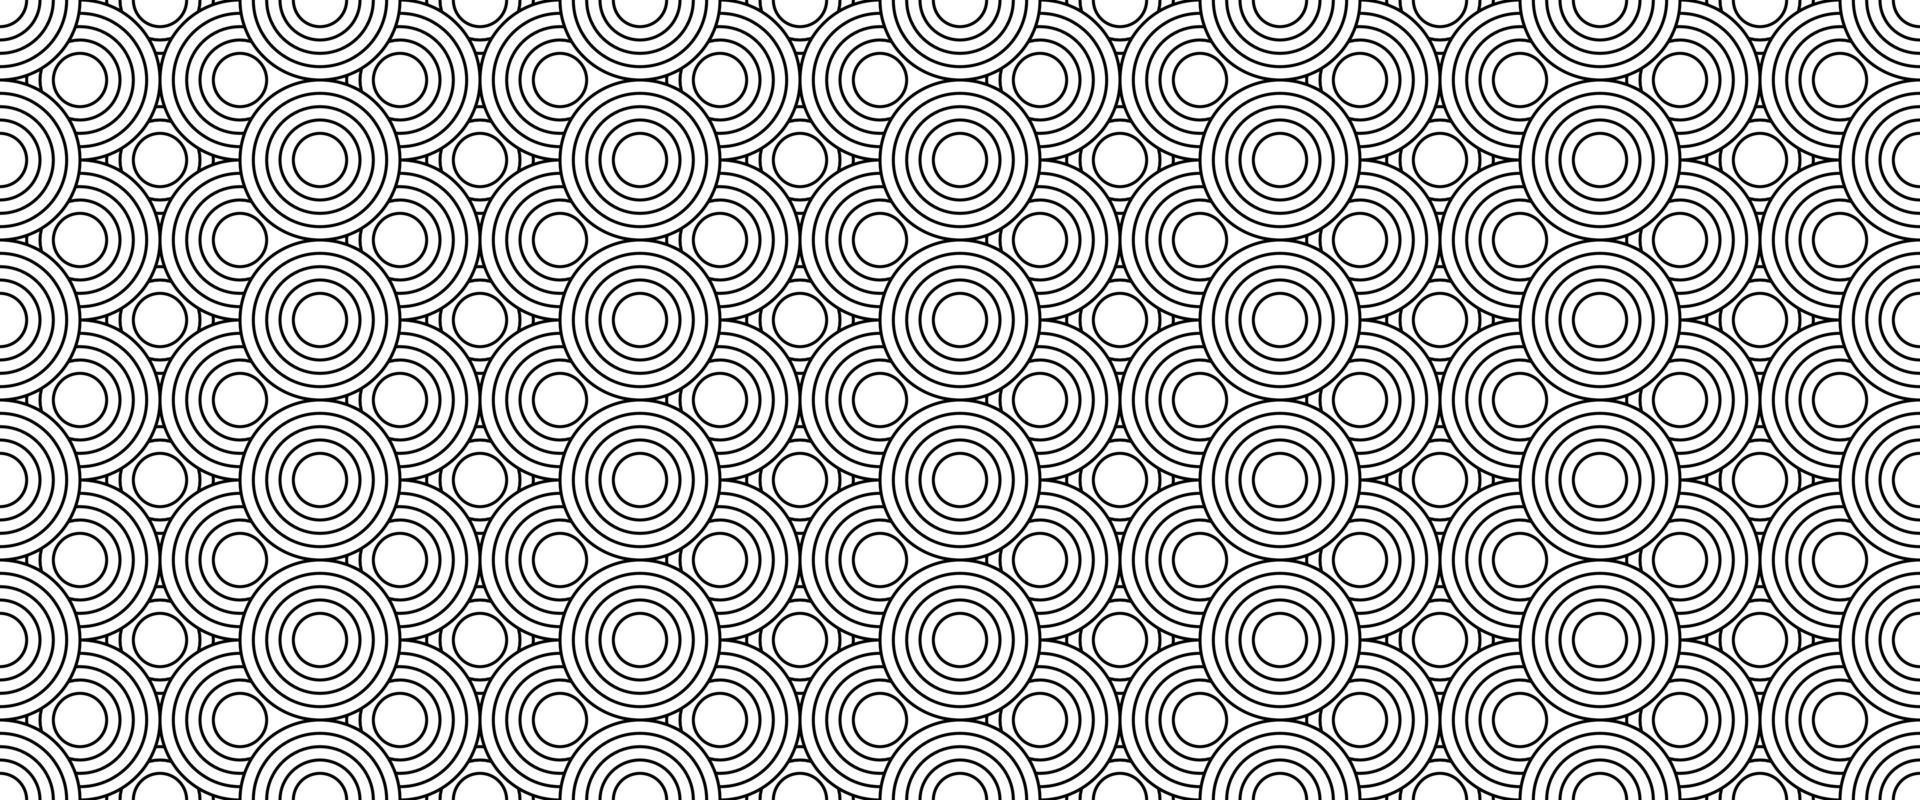 svart vit linje cirkel sömlös mönster vektor